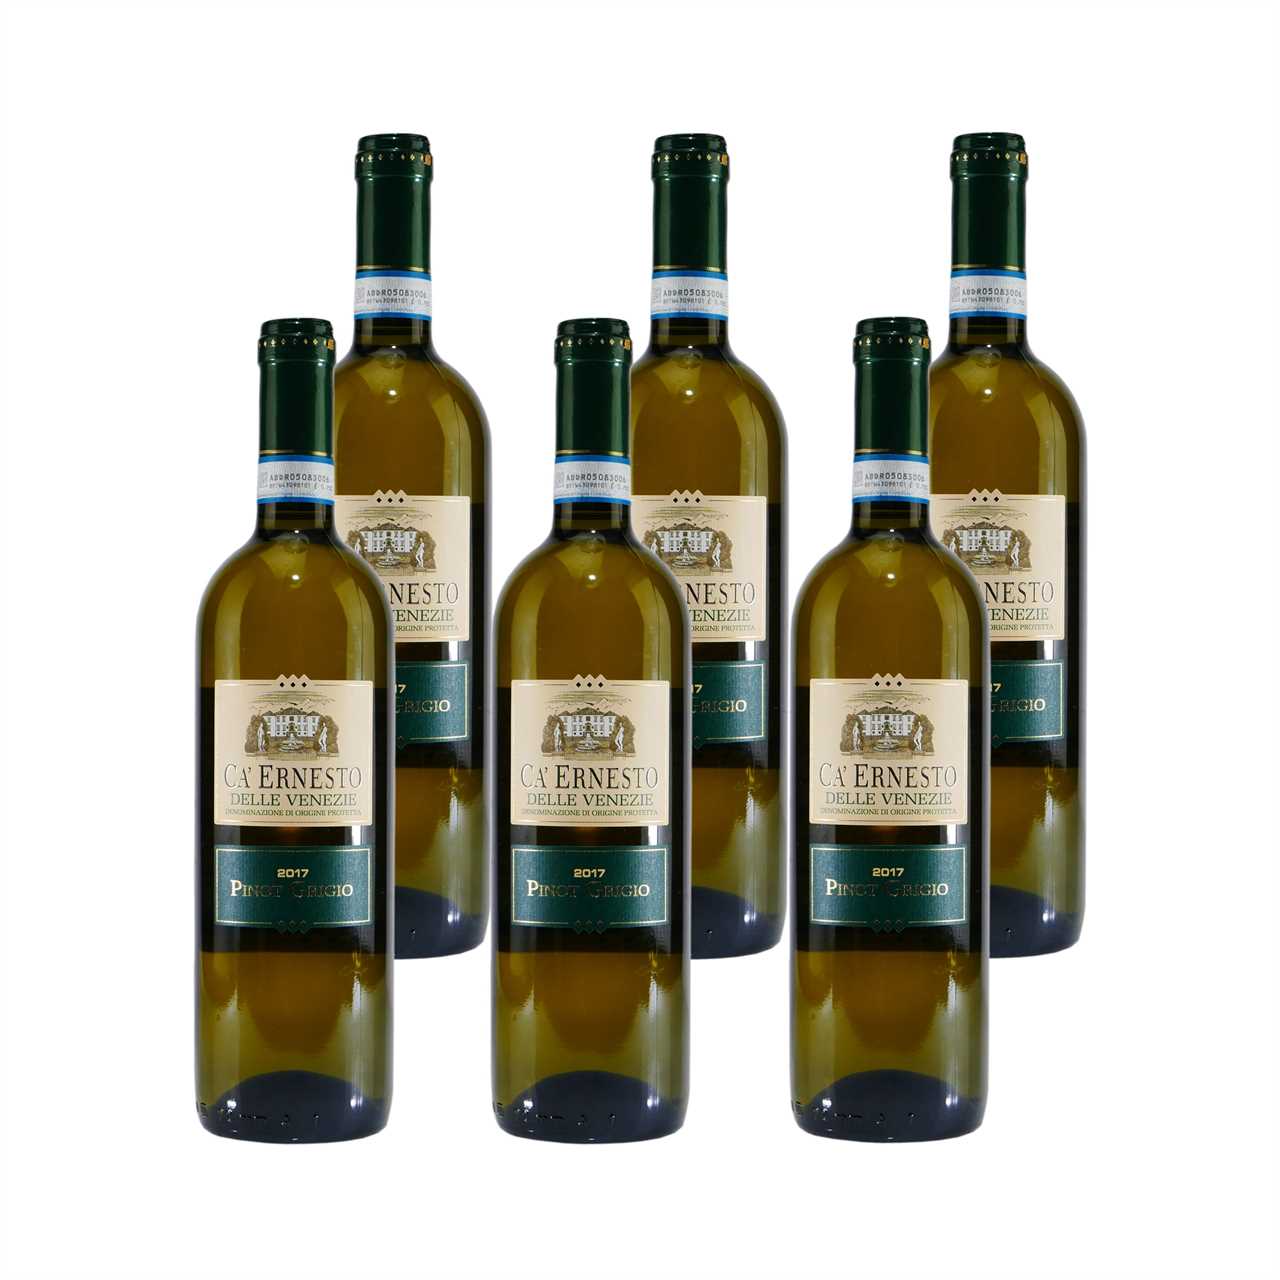 (6 CA\' ERNESTO x DOP Weißwein Grigio 0,75L) Pinot